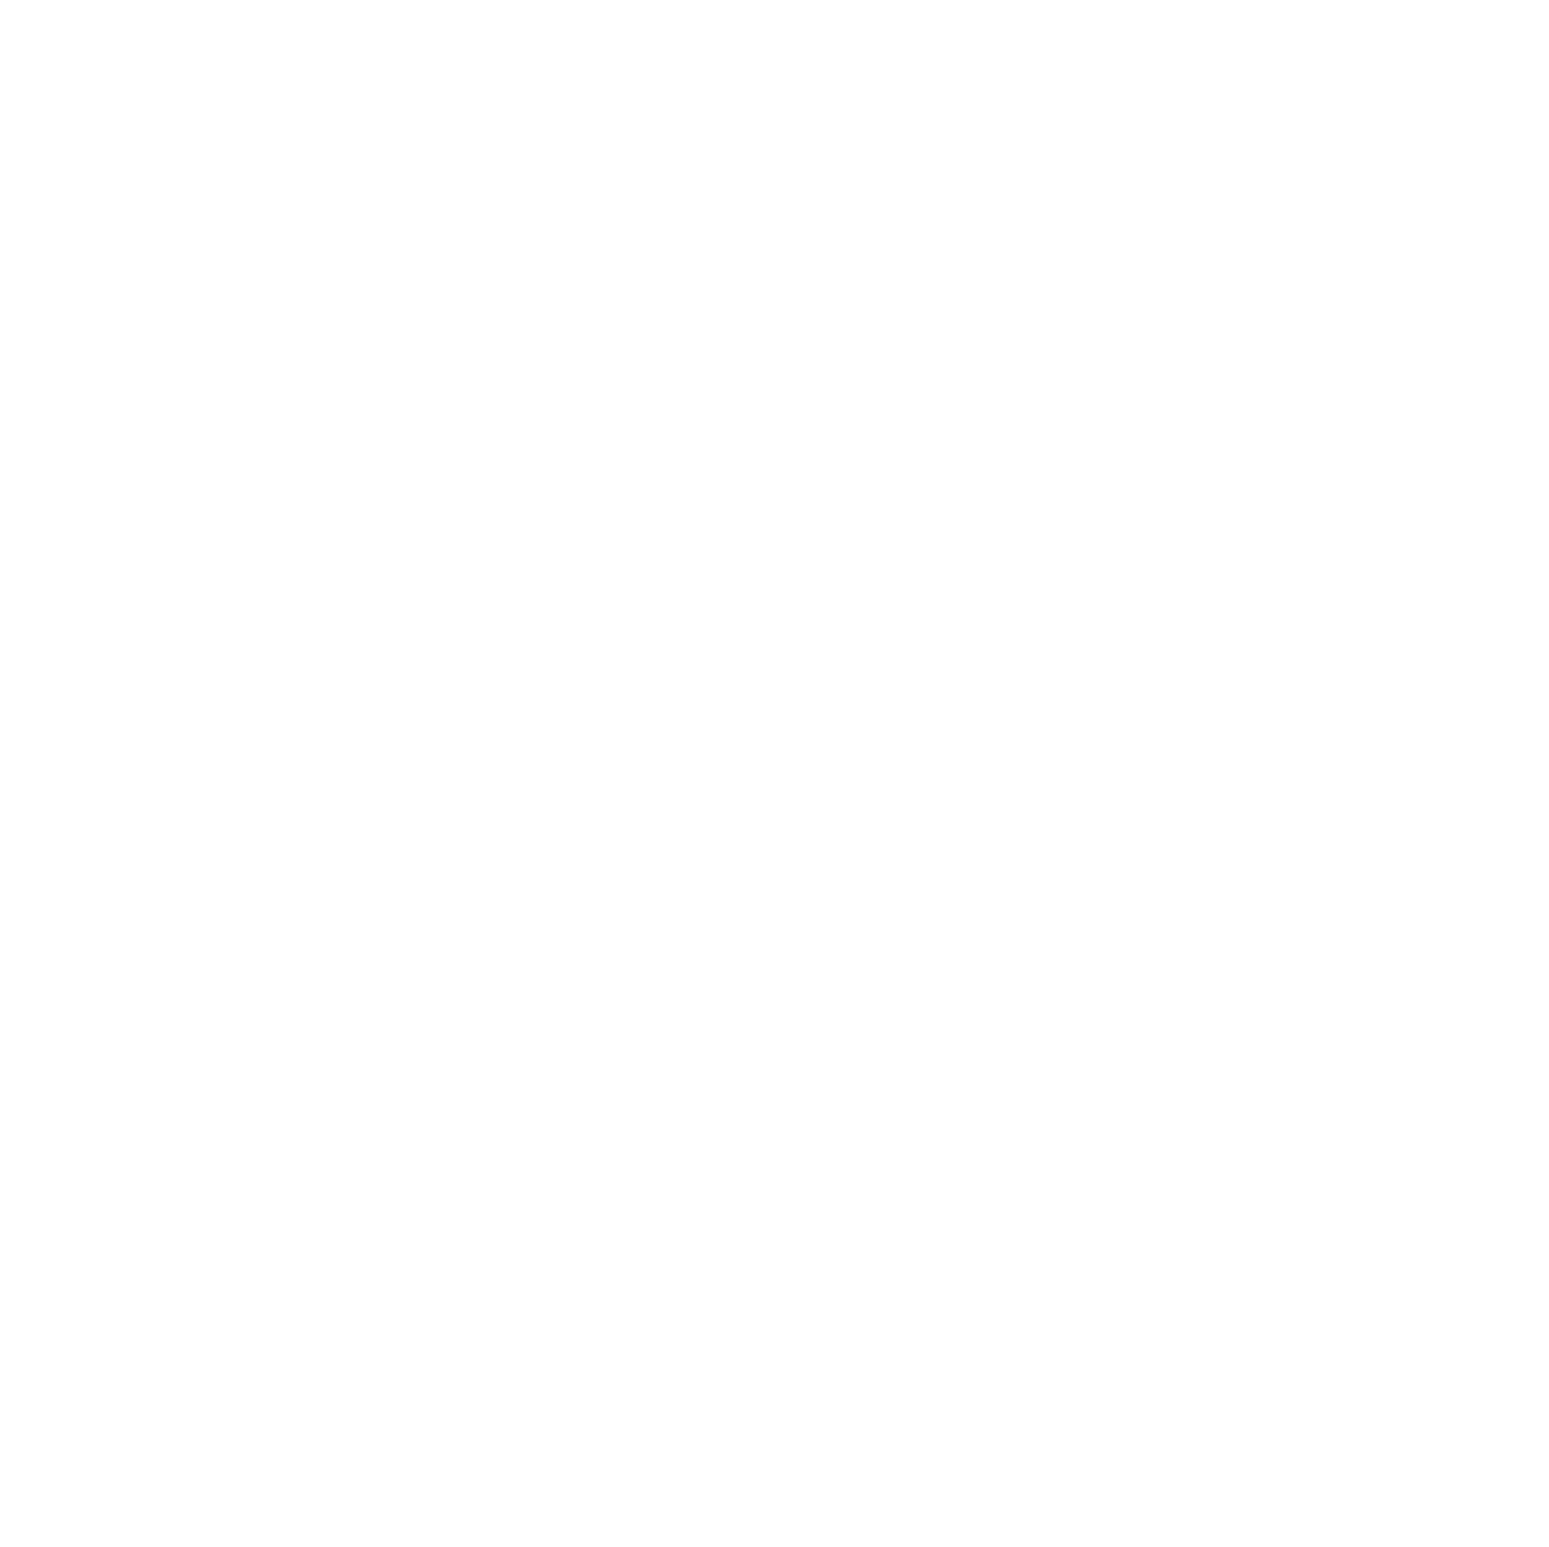 Tarkett logo pour fonds sombres (PNG transparent)